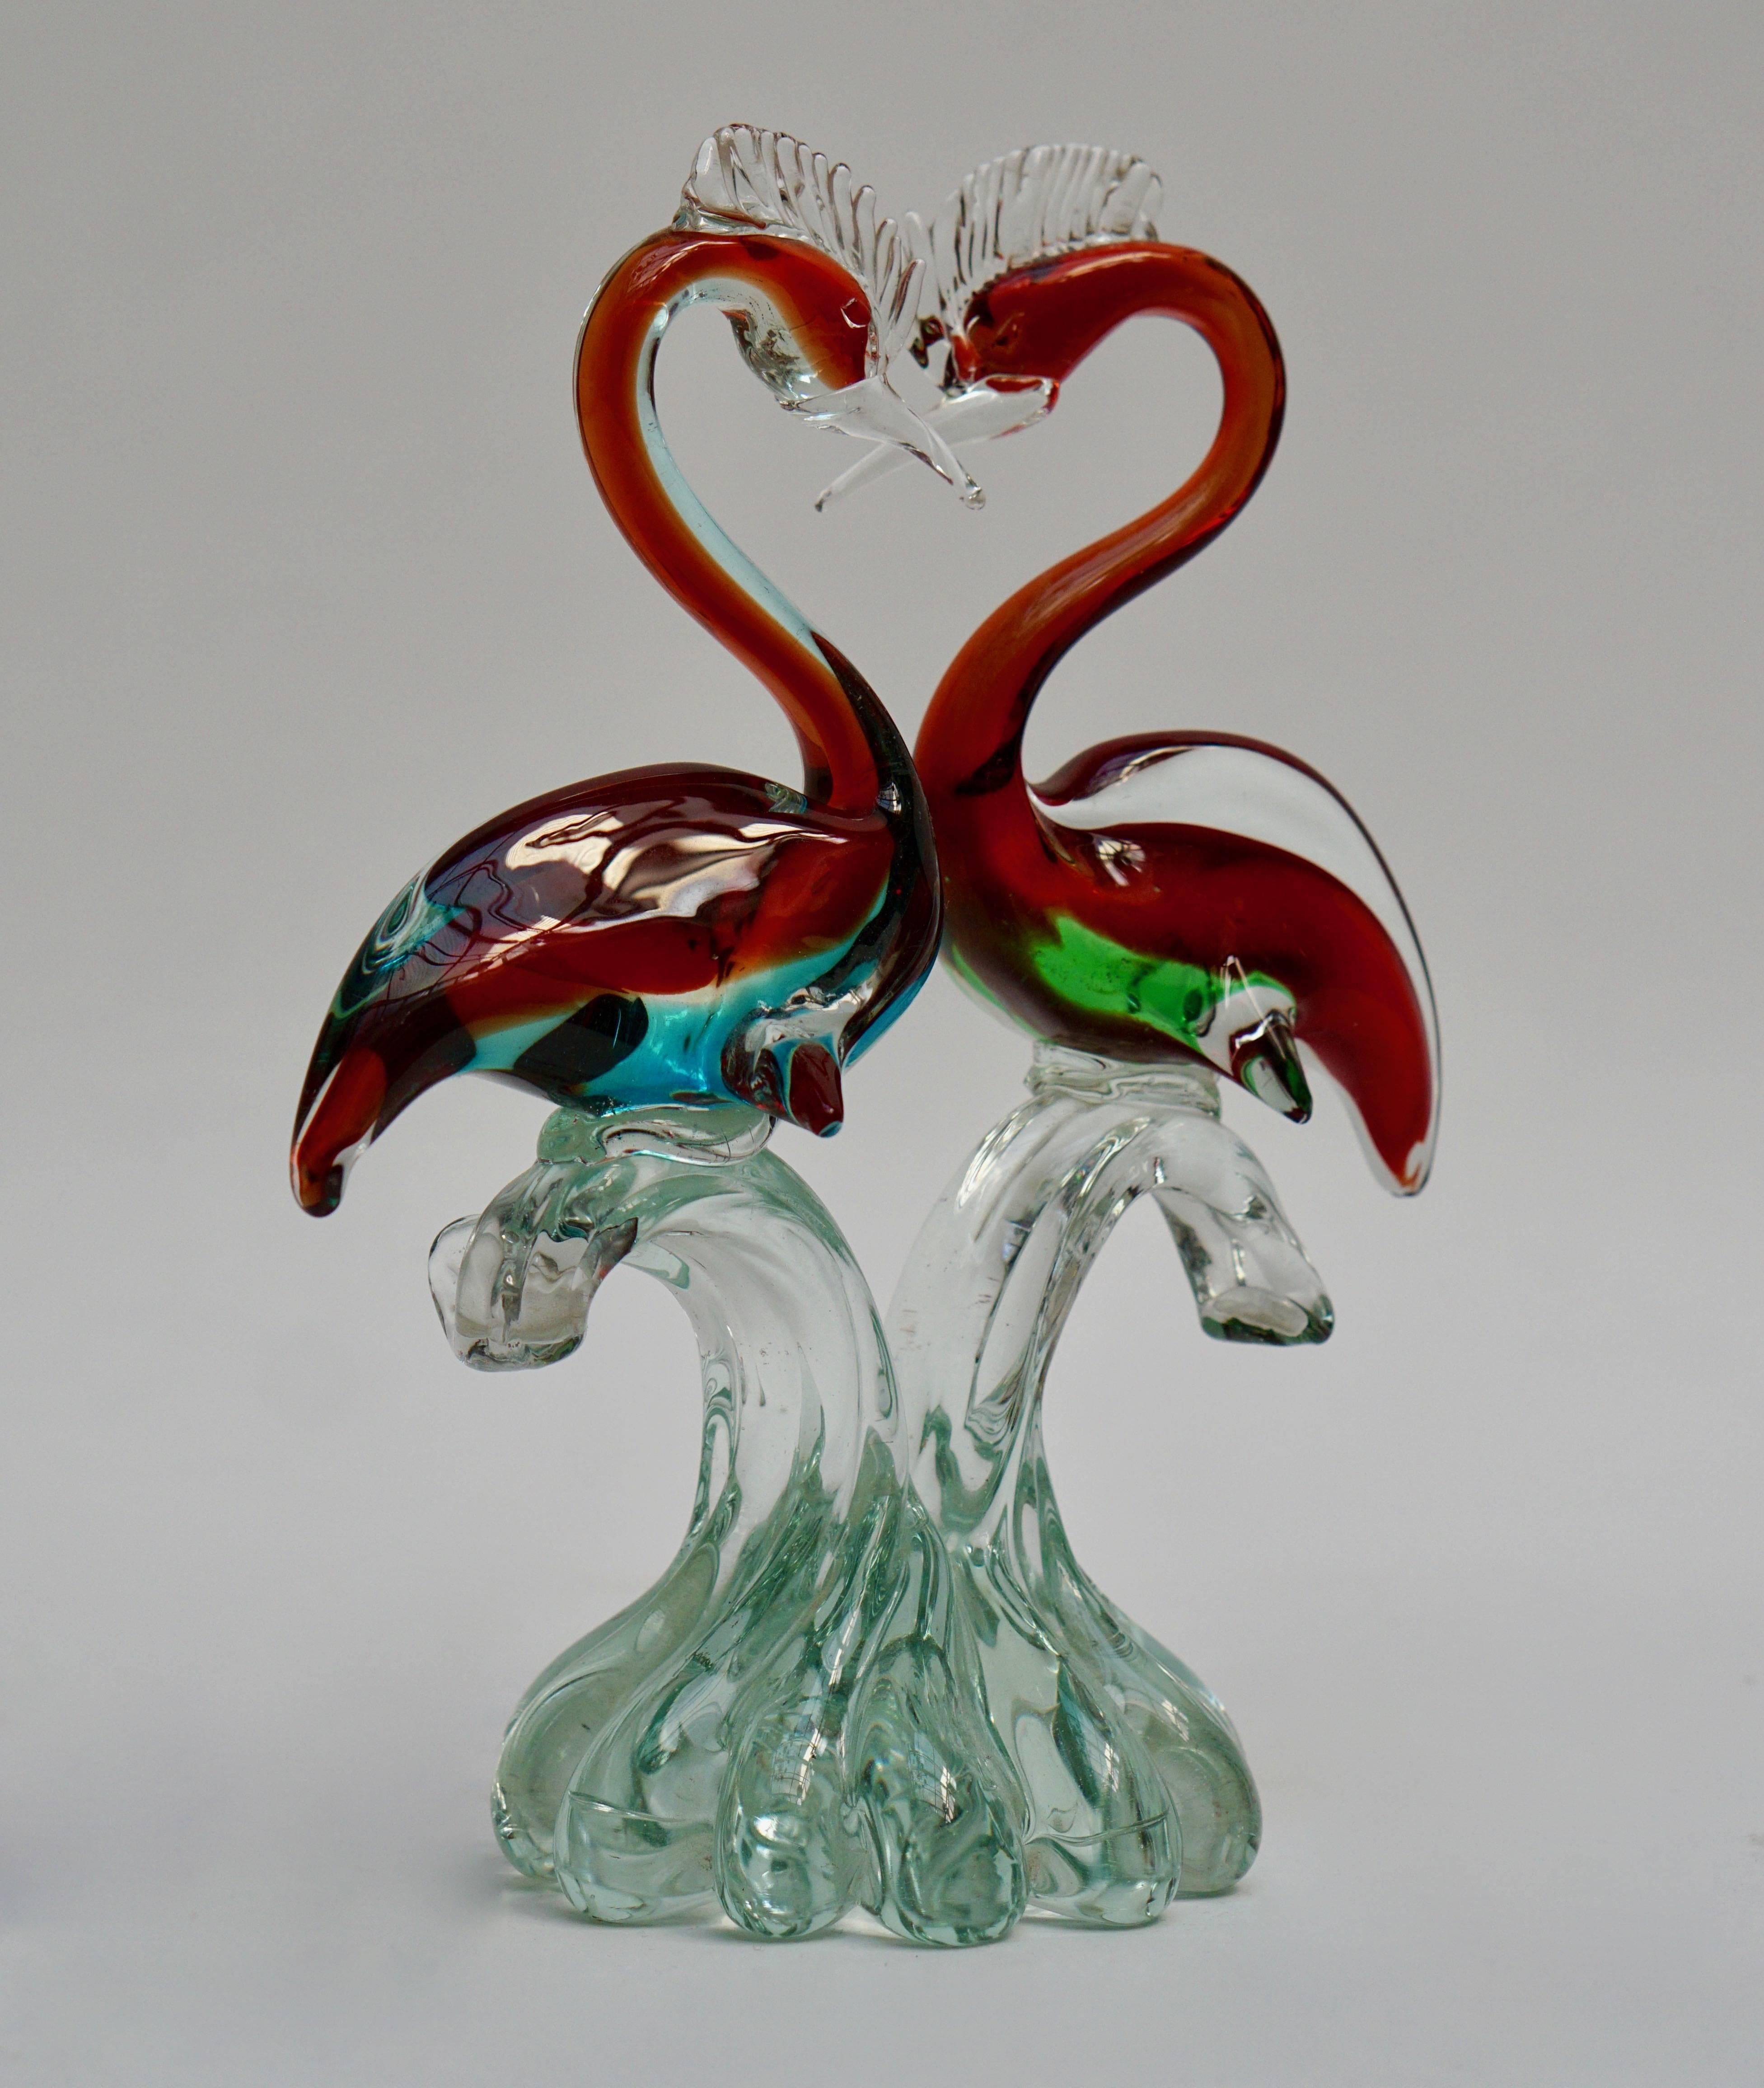 Murano glass sculpture of two birds.
Measures: Height 32 cm.
Width 27 cm.
Depth 13 cm.